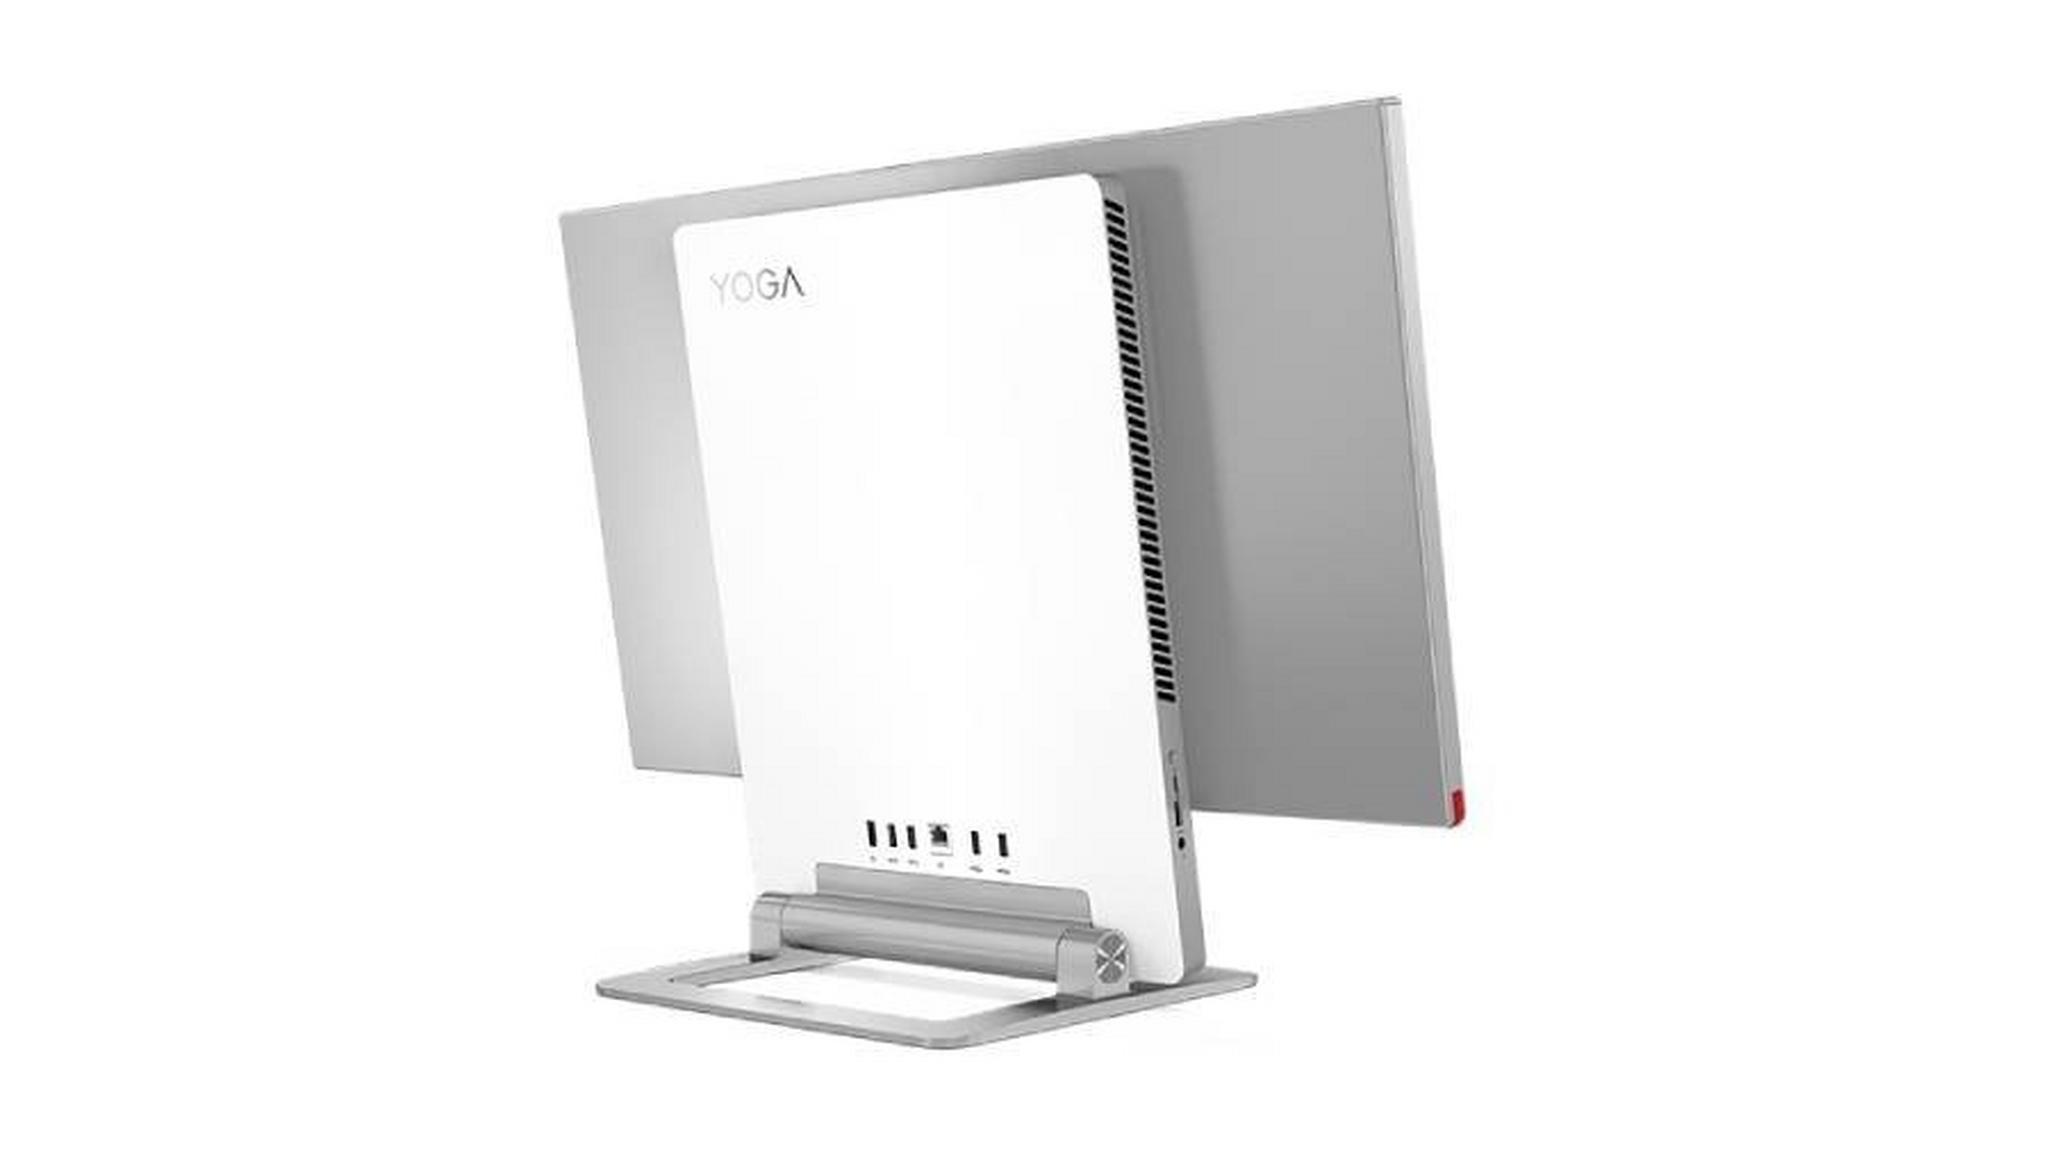 Lenovo Yoga, Ryzen 7, 32GB, 1TB SSD, 27-inch All in One Desktop - F0G70020AX